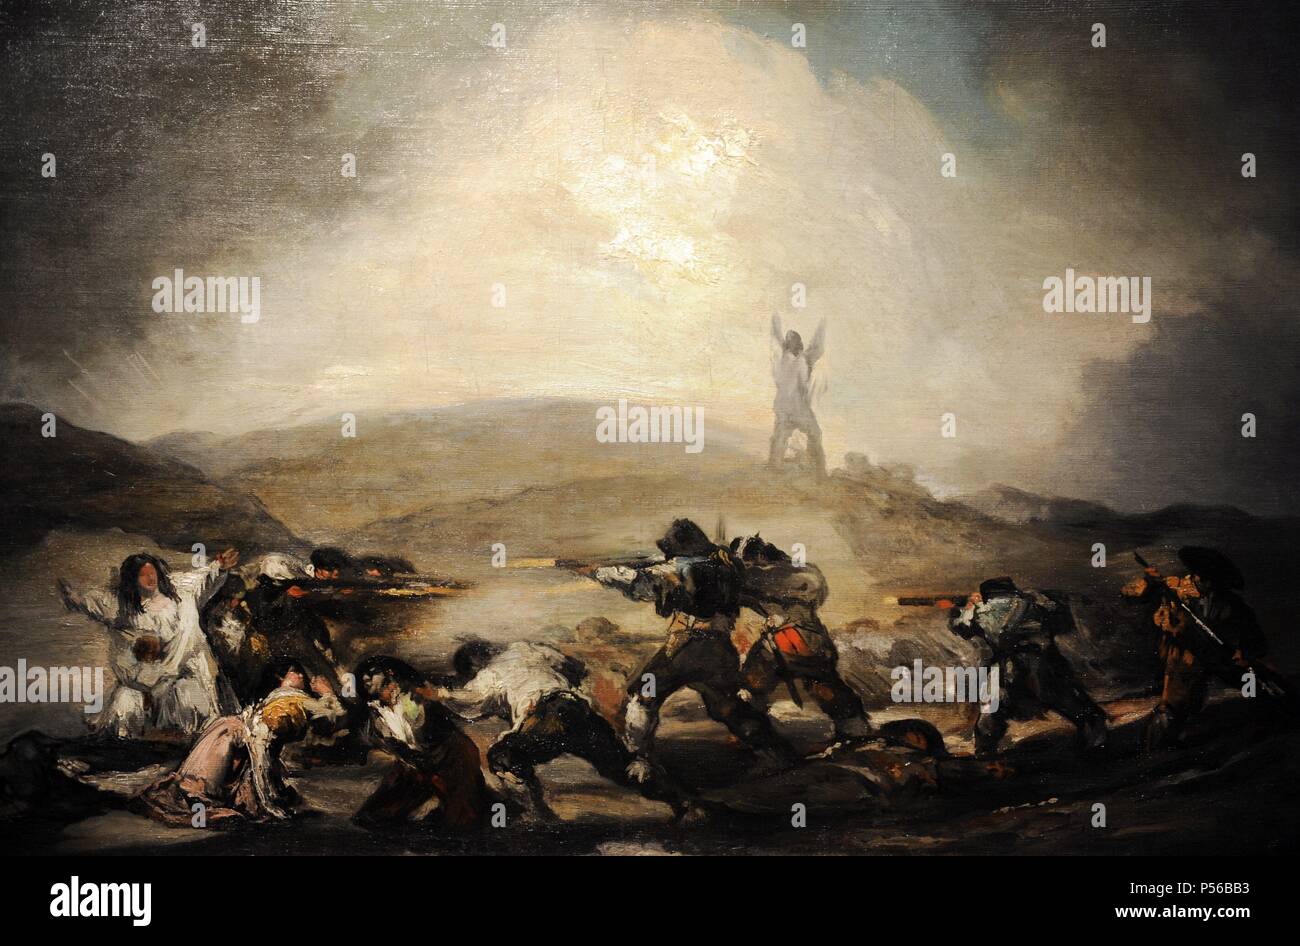 Francisco de Goya (1746-1828). Spanisch romantische Maler. Szene aus dem Spanischen Unabhängigkeitskrieg, nach 1808. Museum der Bildenden Künste Budapest. Ungarn. Stockfoto